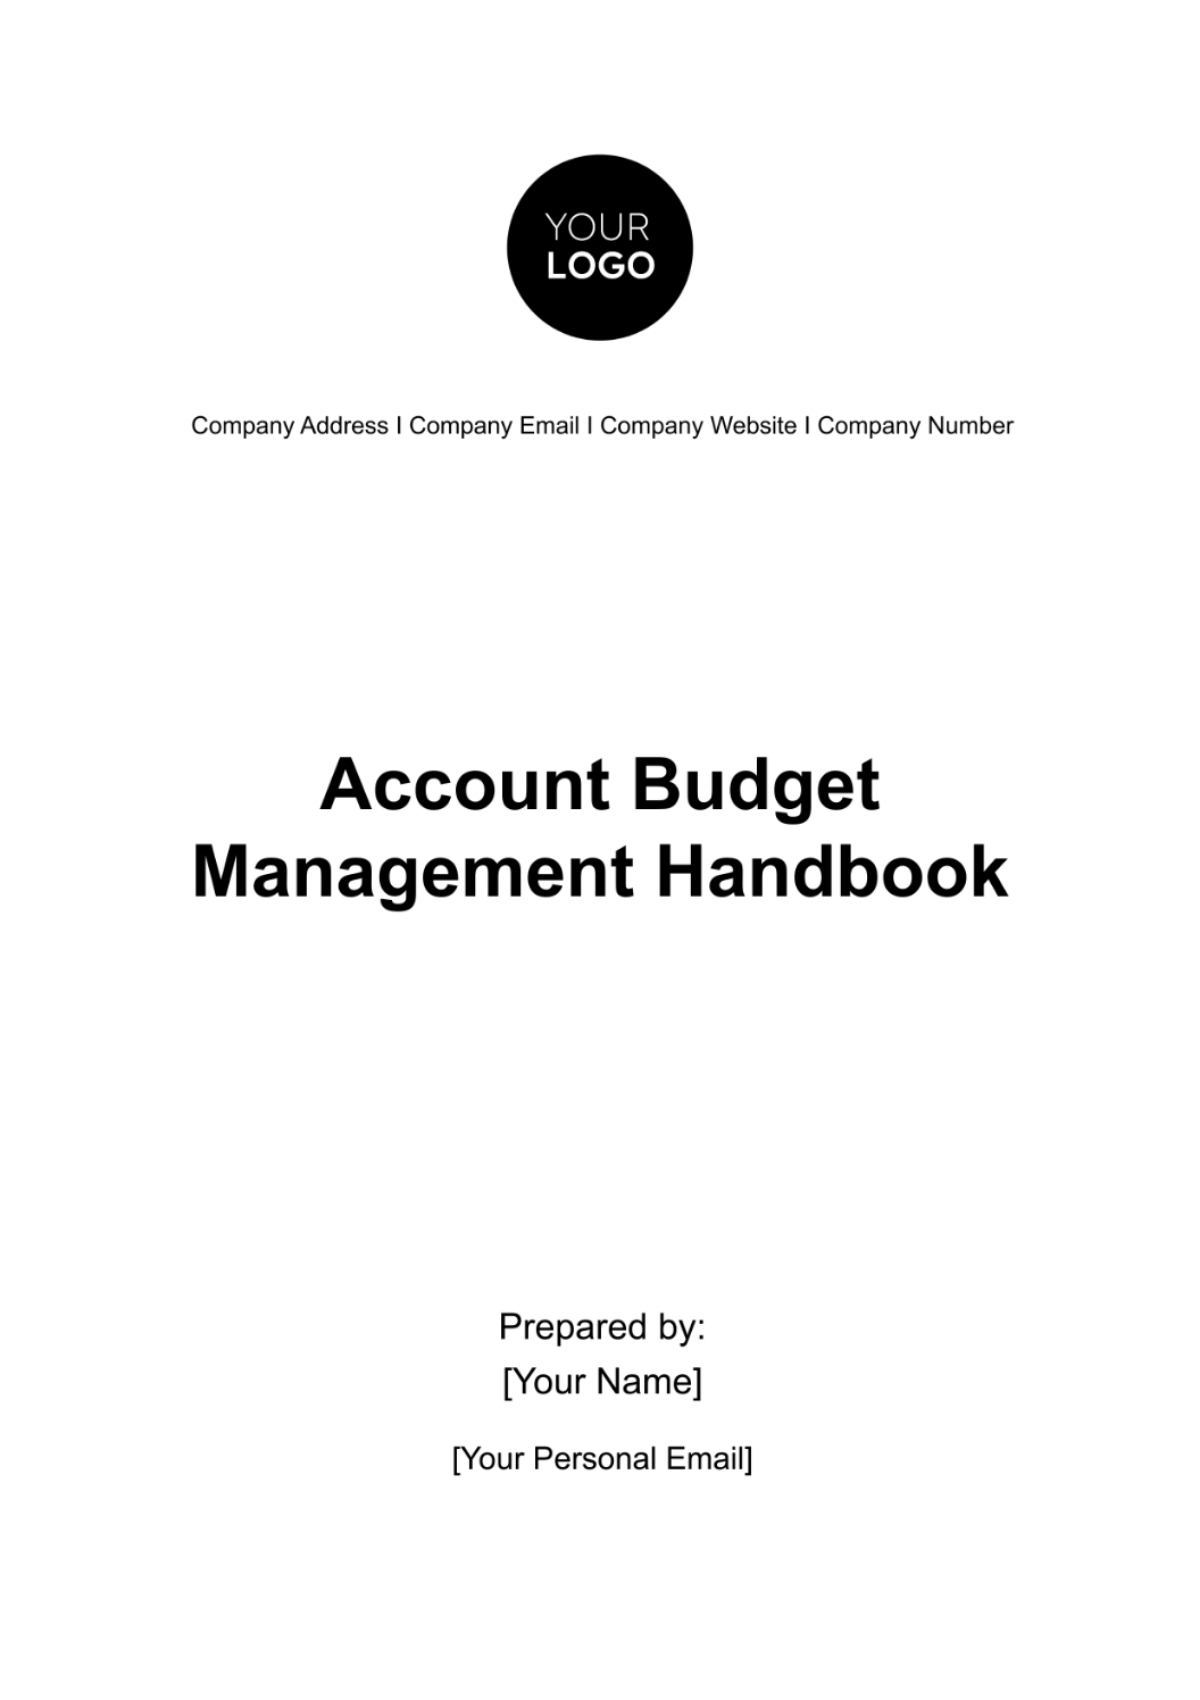 Account Budget Management Handbook Template